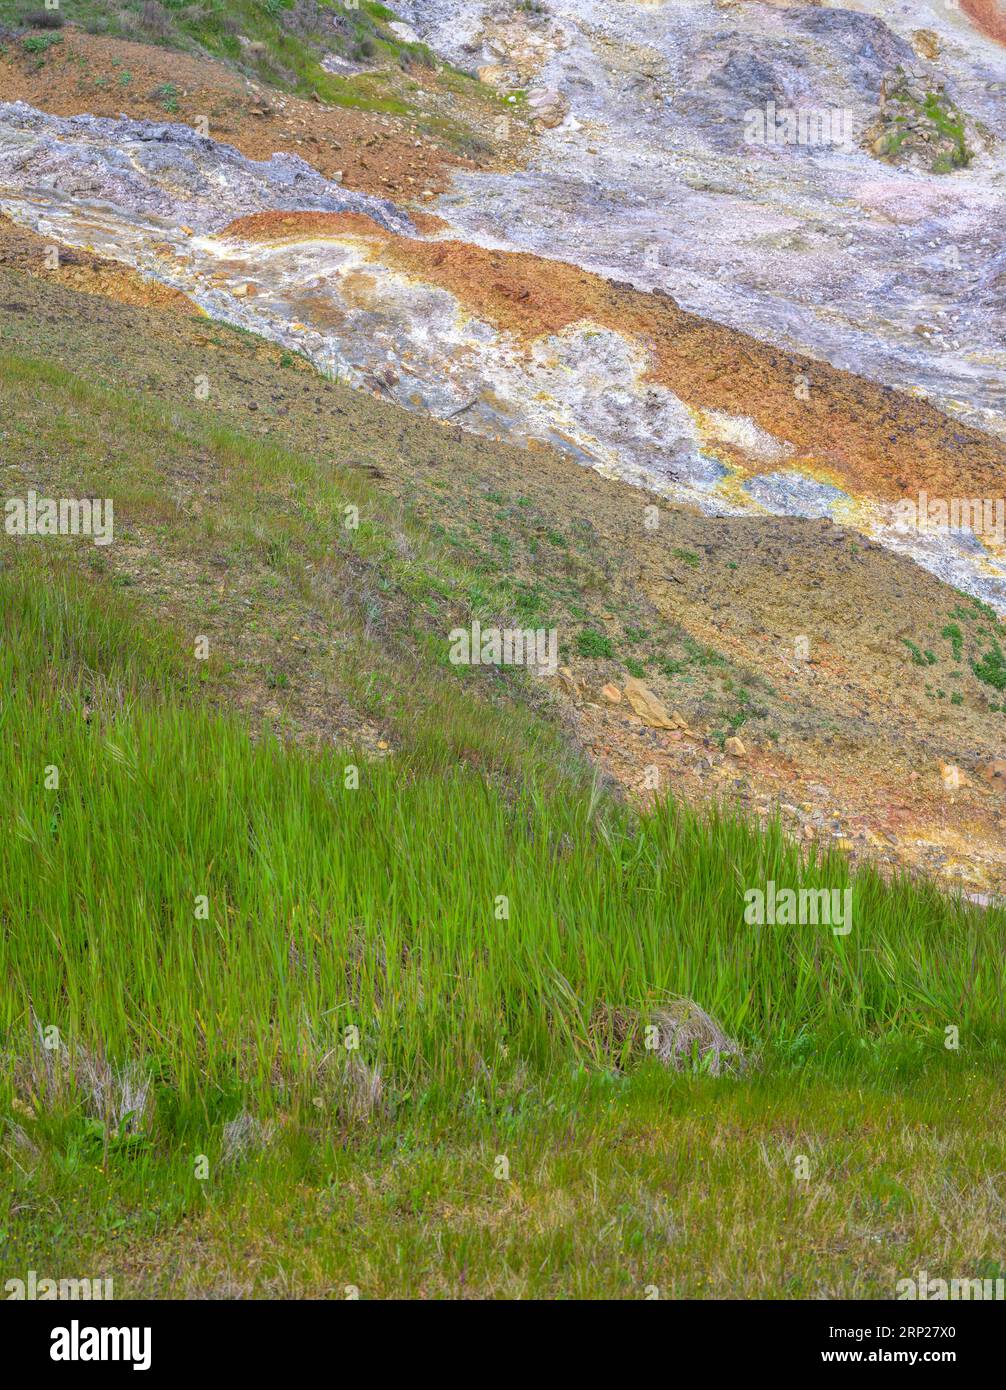 Hellgrünes Gras im Gegensatz zu den bunten Schutthaufen, Biancane Geothermal Park, Monterotondo Marittimo, Provinz Grosseto, Italien Stockfoto